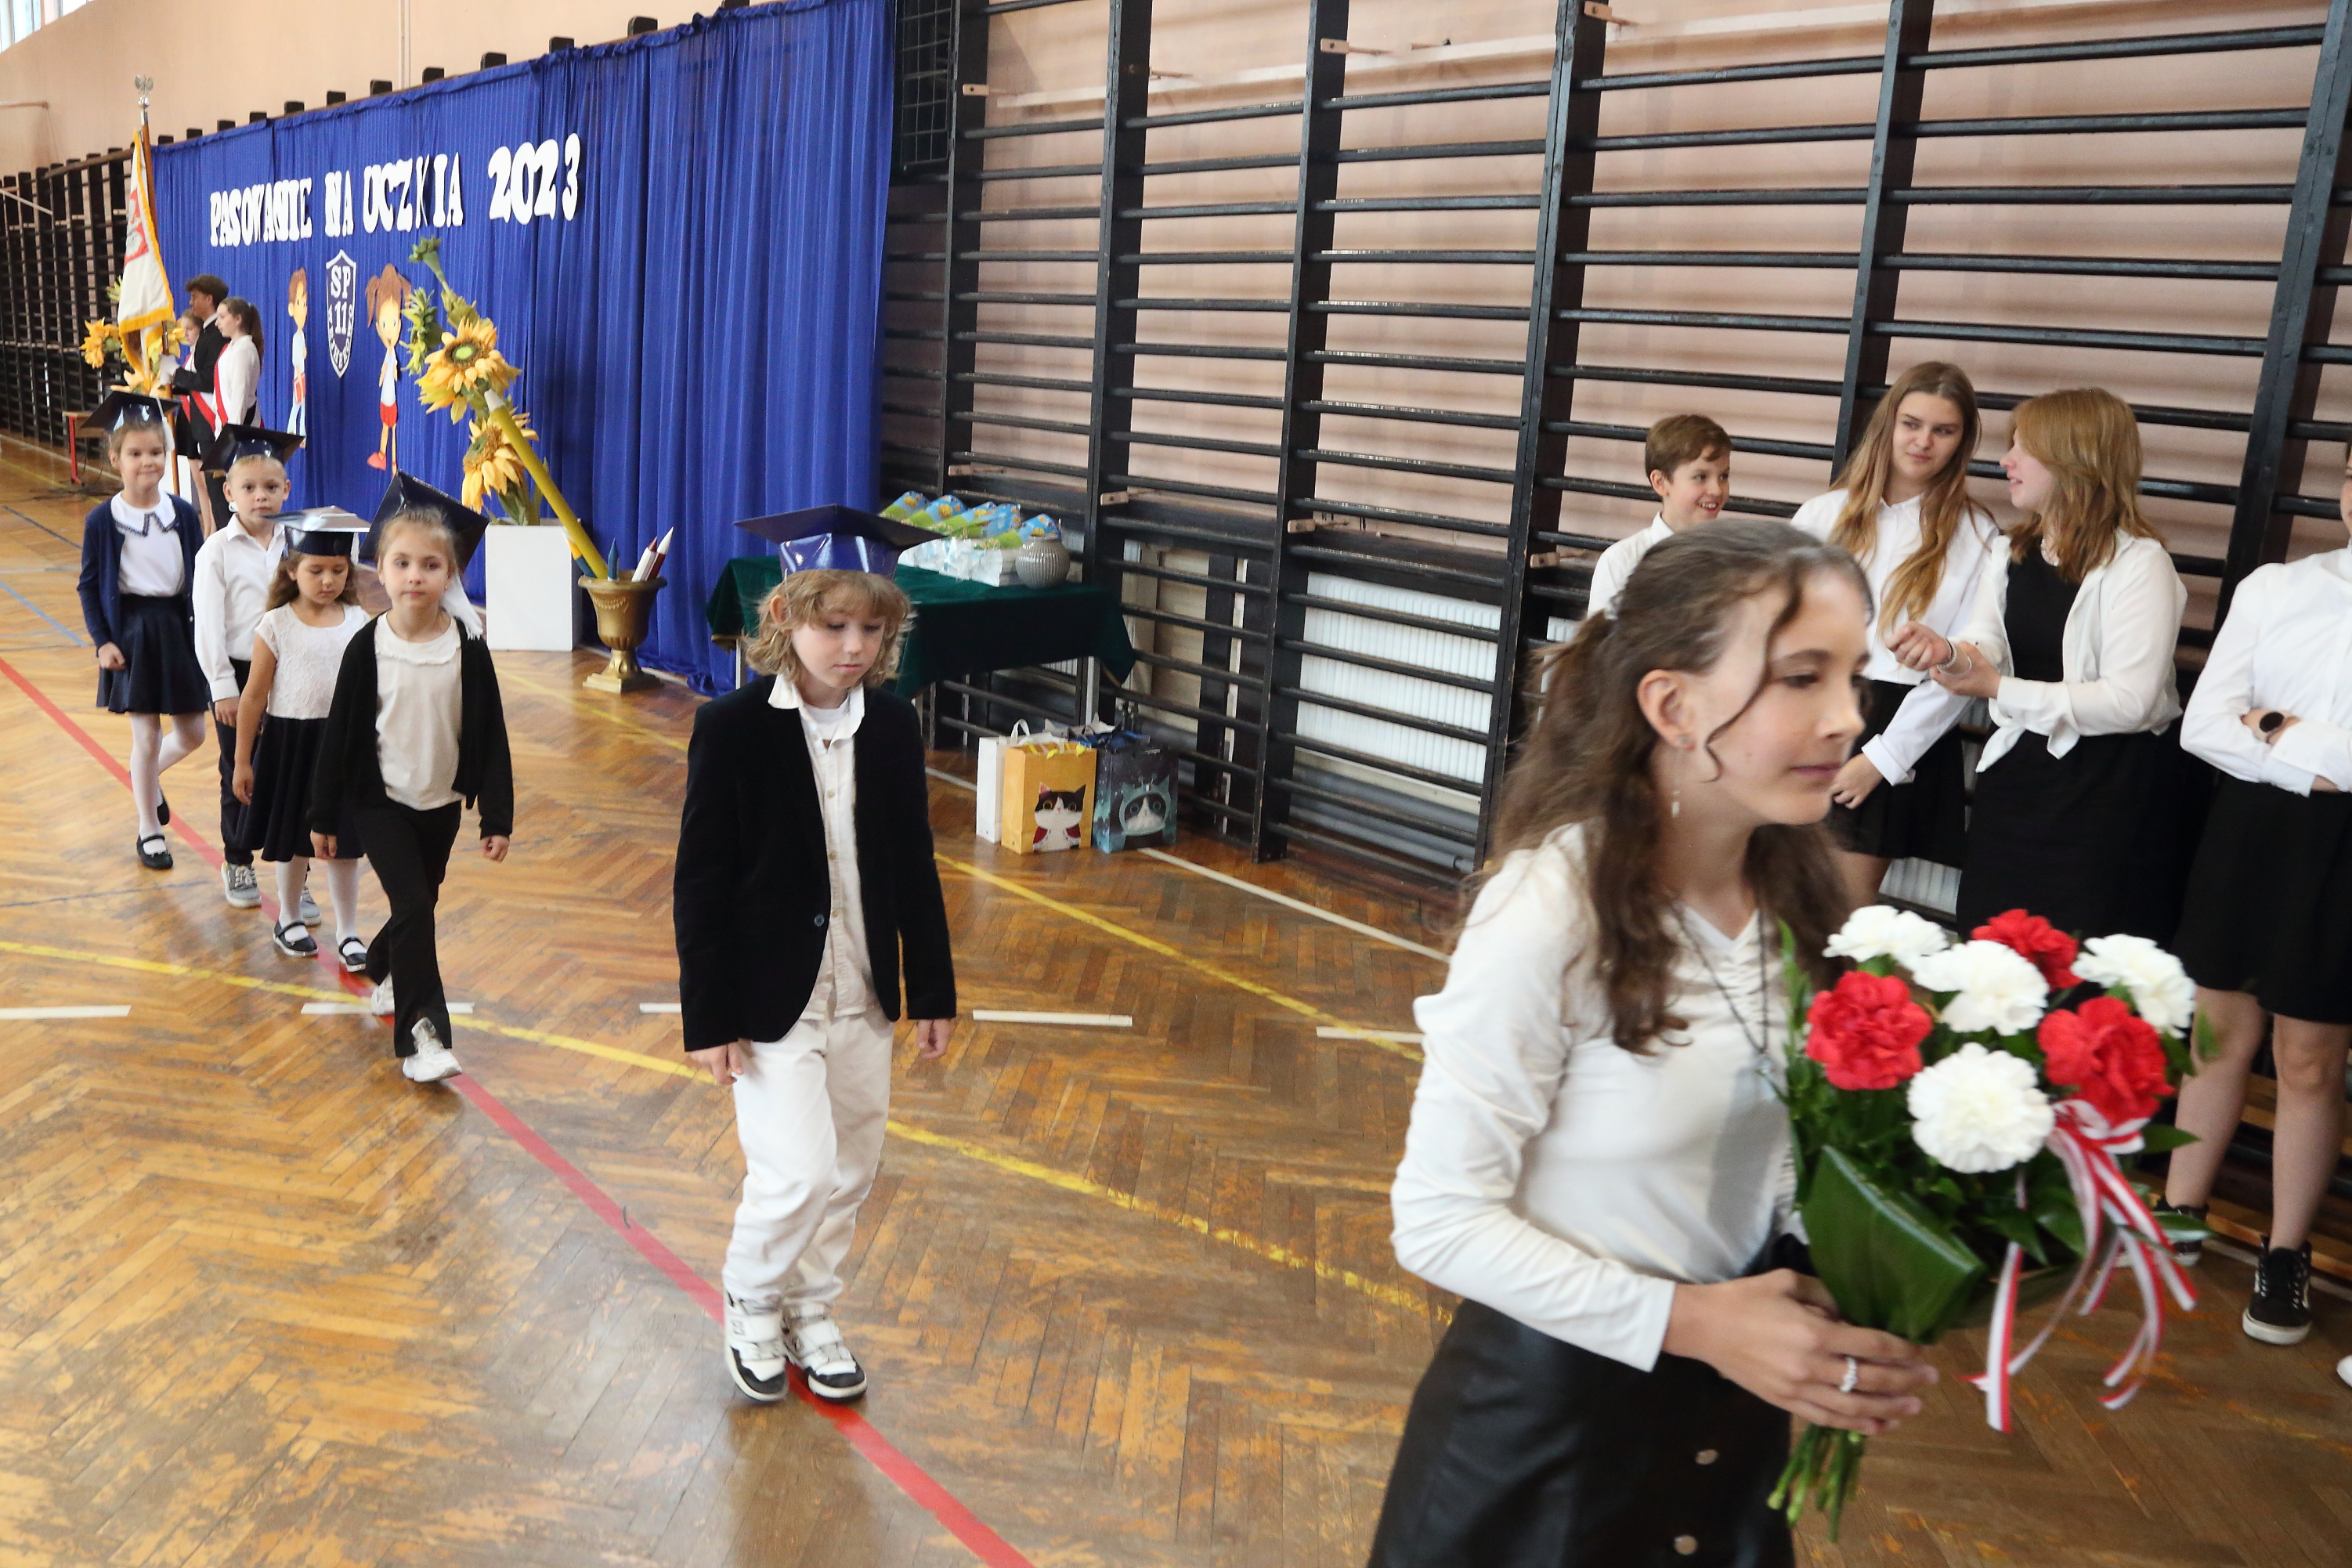 Na zdjęciu widać uczennicę klasy ósmej trzymającą bukiet złożony z białych i czerwonych goździków, za nią w rzędzie delegaci klas pierwszych do łożenia kwiatów pod tablicą patrona szkoły.